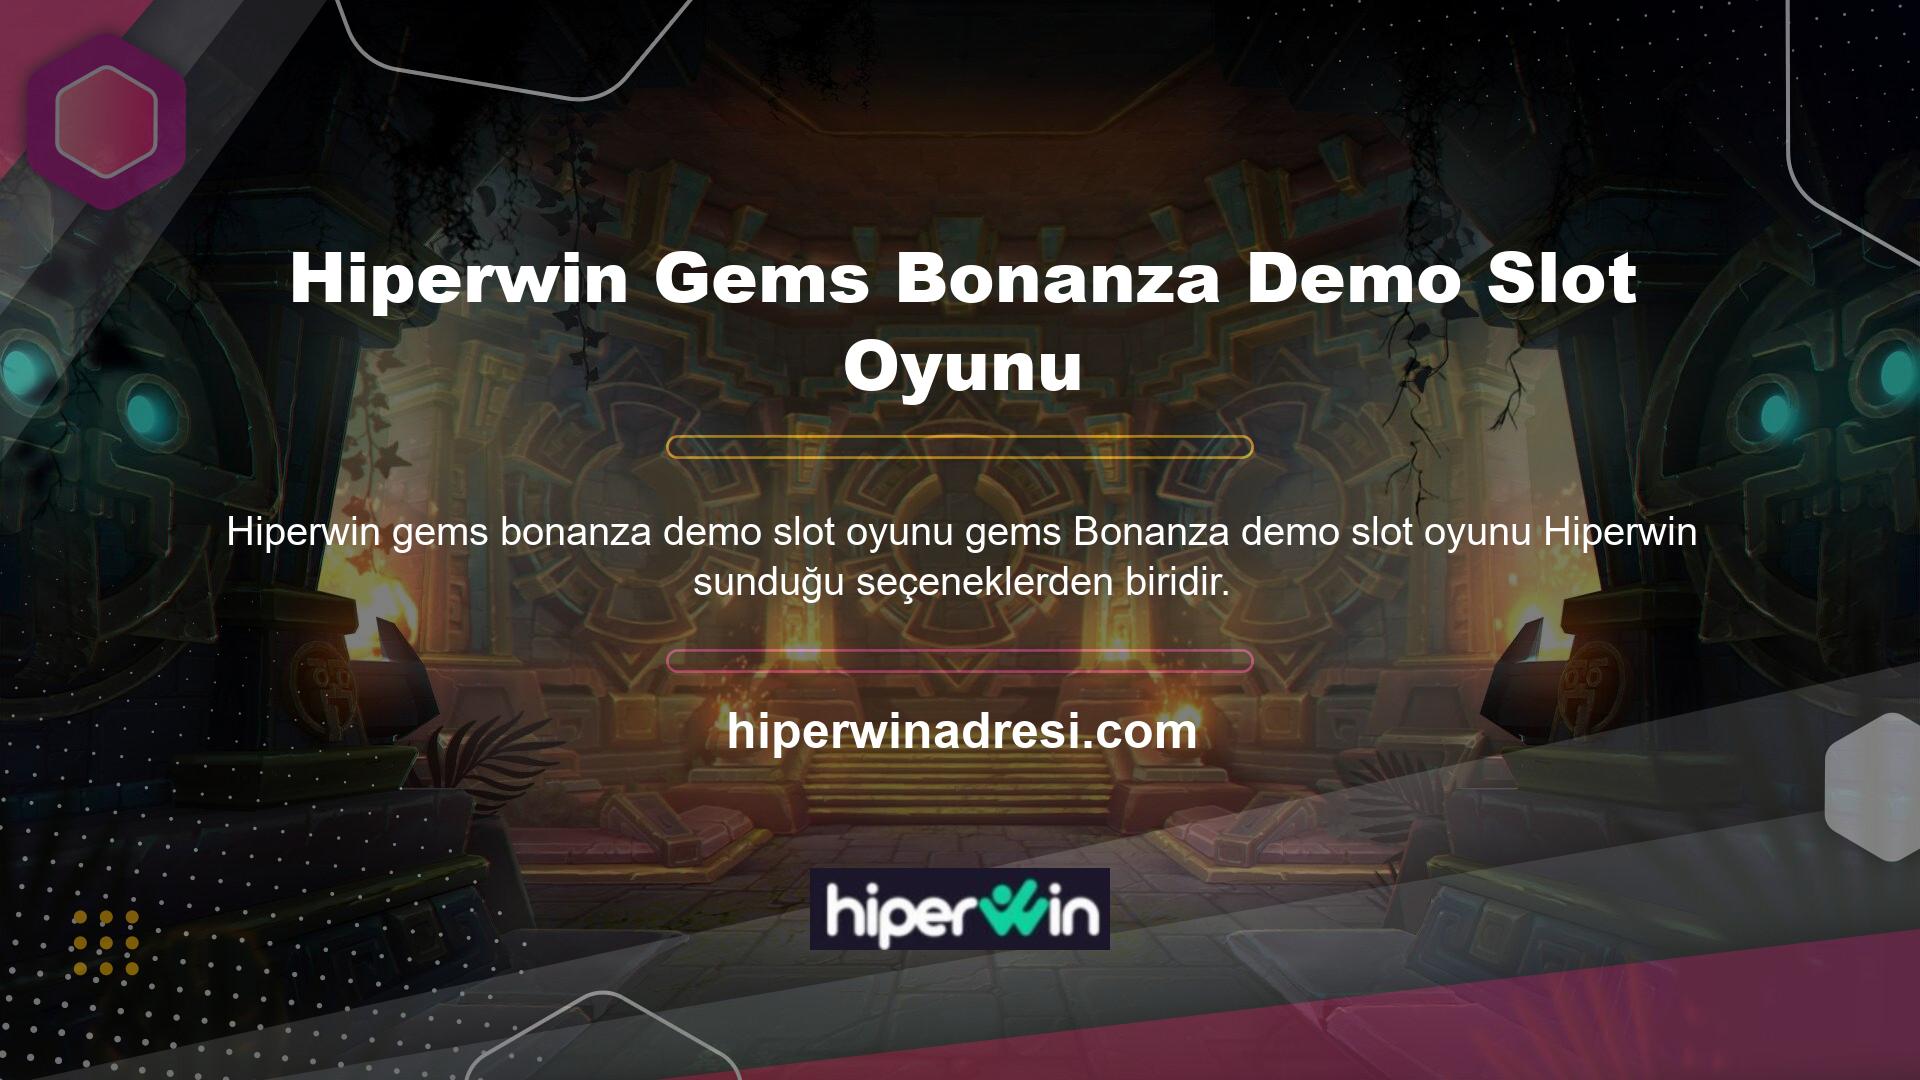 Hiperwin, casino endüstrisinde sadece Gems Bonanza slot makinesinin değil, tüm slot makinelerinin demo versiyonlarını sunan birkaç şirketten biridir